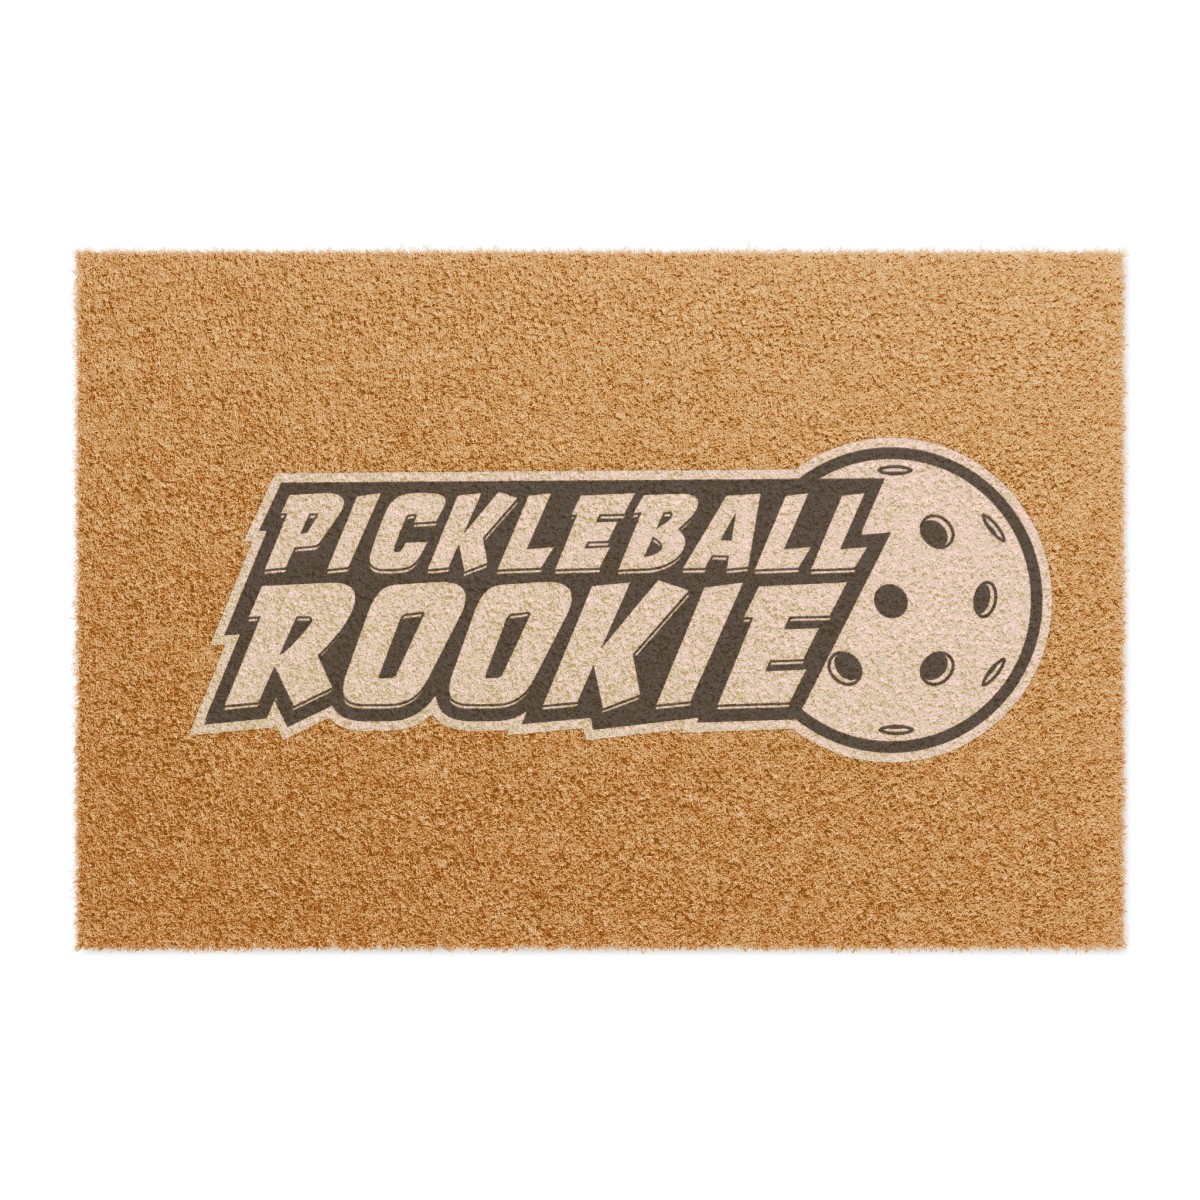 Pickleball Doormat product main image